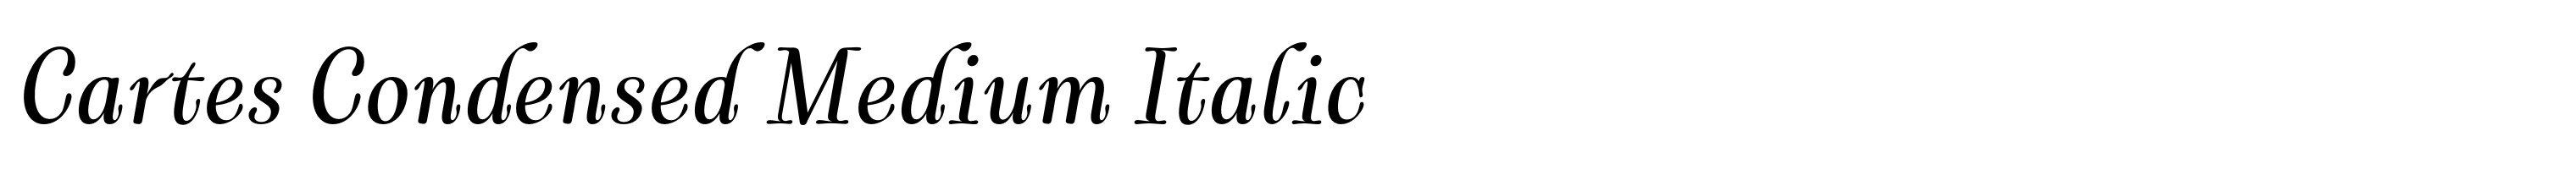 Cartes Condensed Medium Italic